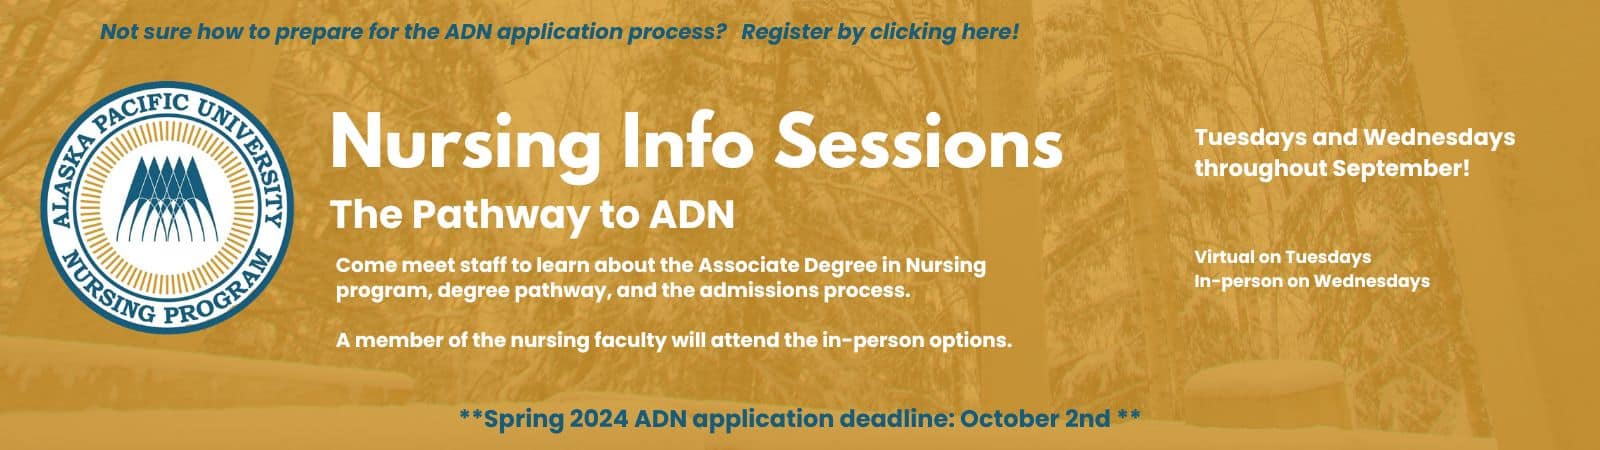 Nursing Info Session Banner (2)